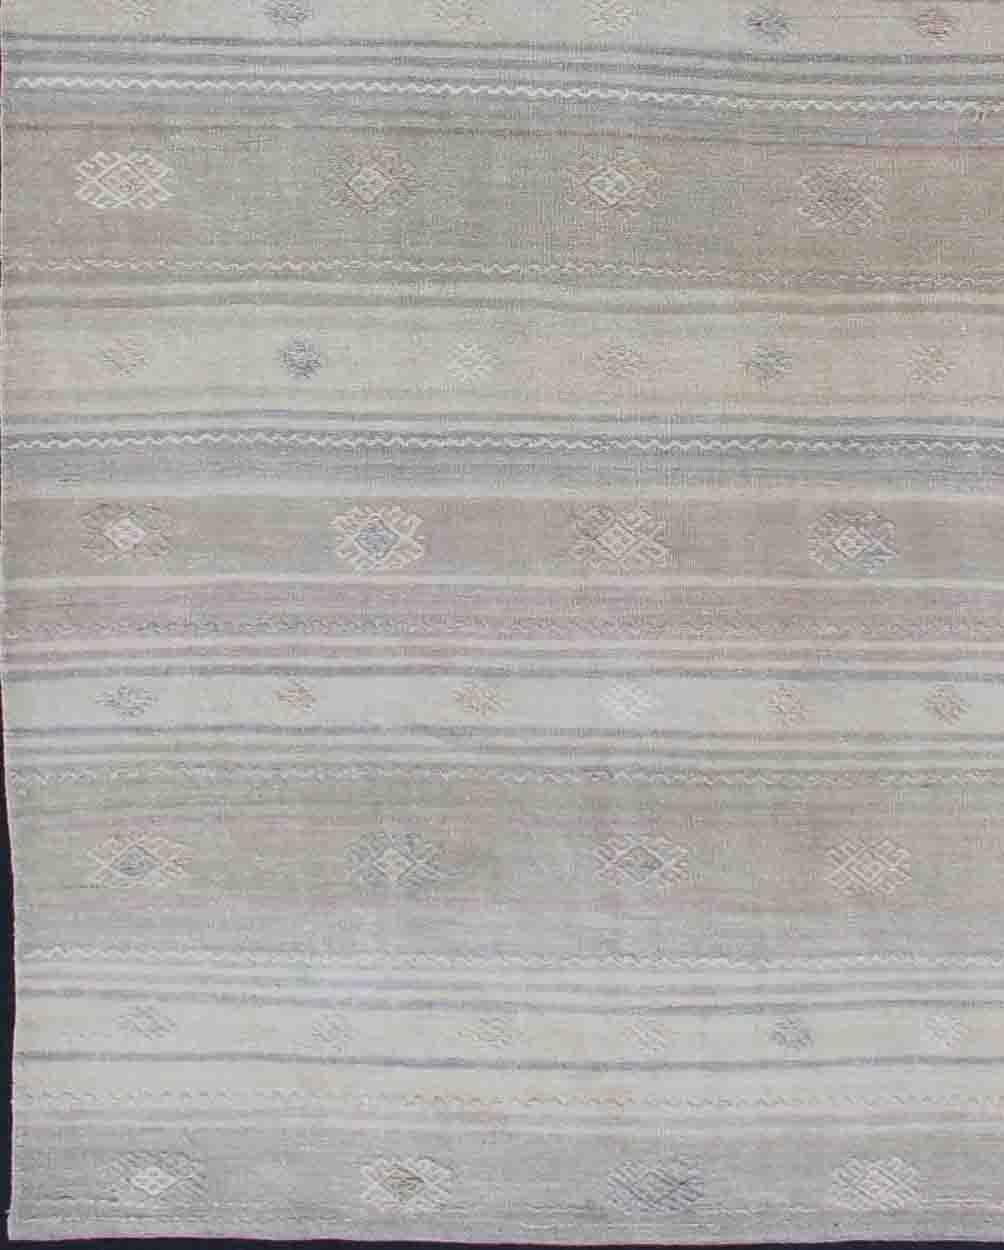 Vintage Turkish Kilim Runner with Stripes, Keivan Woven Arts / tapis EN-176426, pays d'origine / type : Turquie / Kilim, vers le milieu du 20ème siècle.

Doté d'un motif de rayures horizontales répétées, avec un assortiment de motifs géométriques,